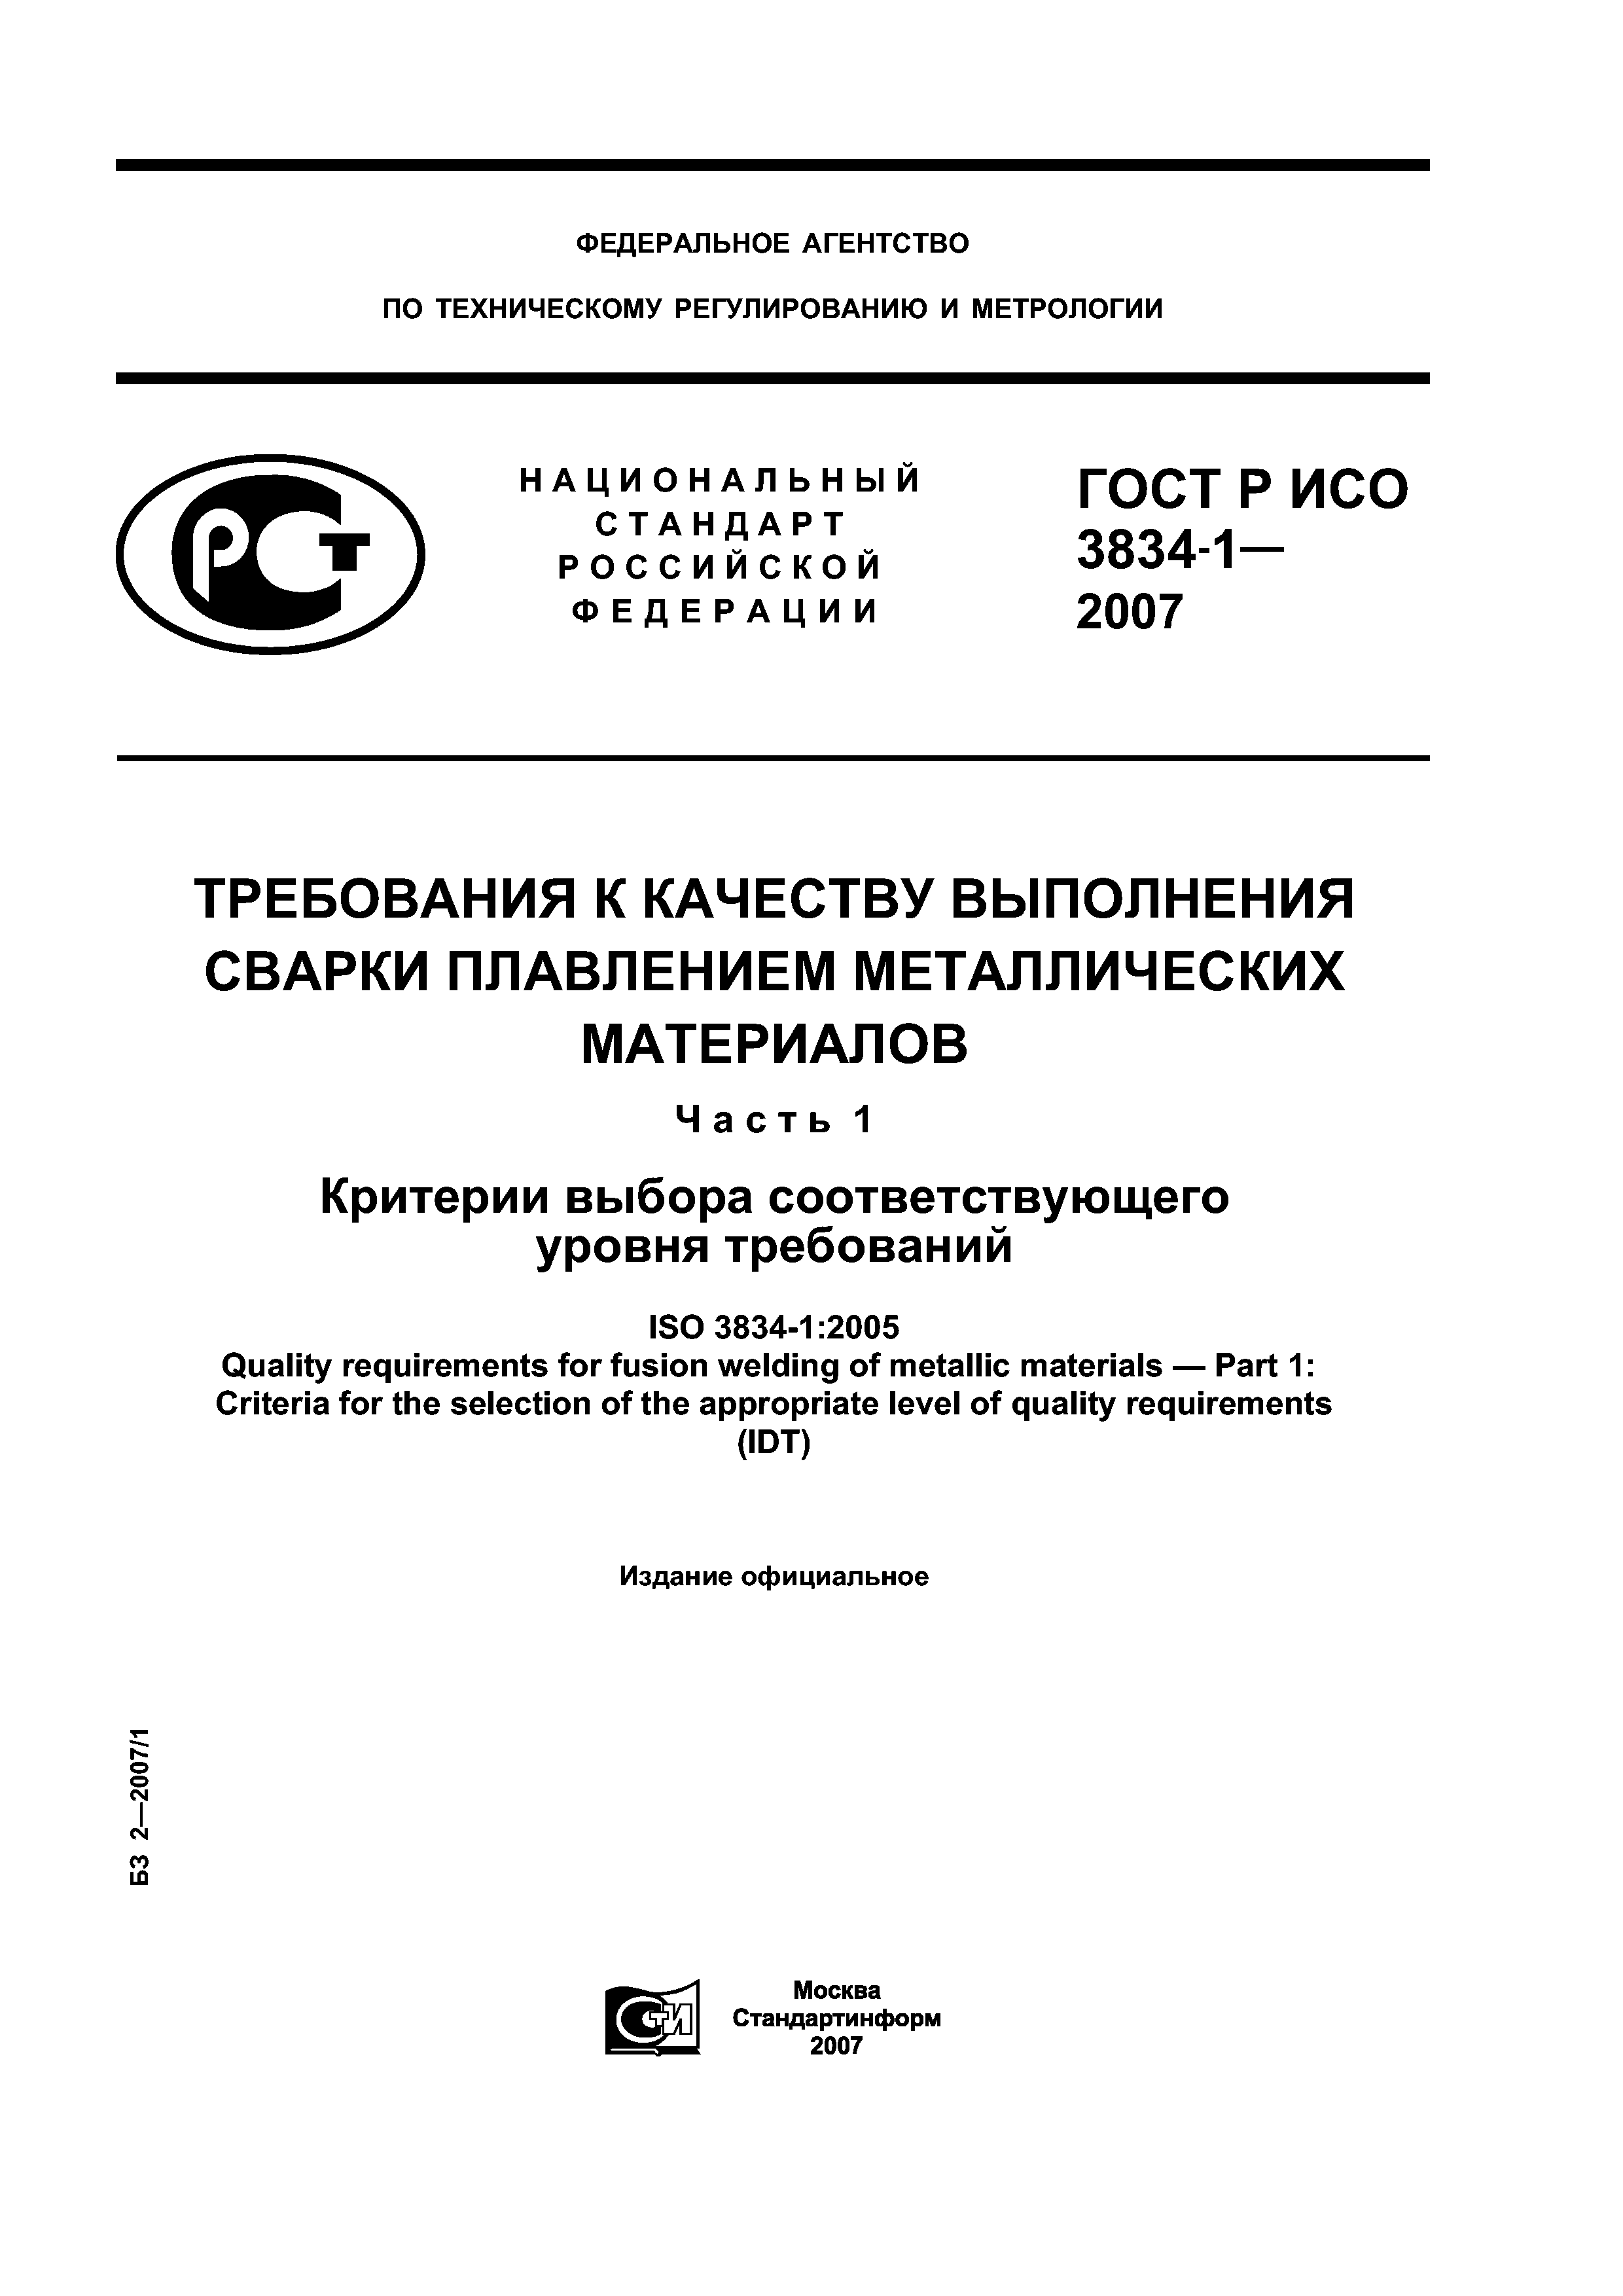 ГОСТ Р ИСО 3834-1-2007